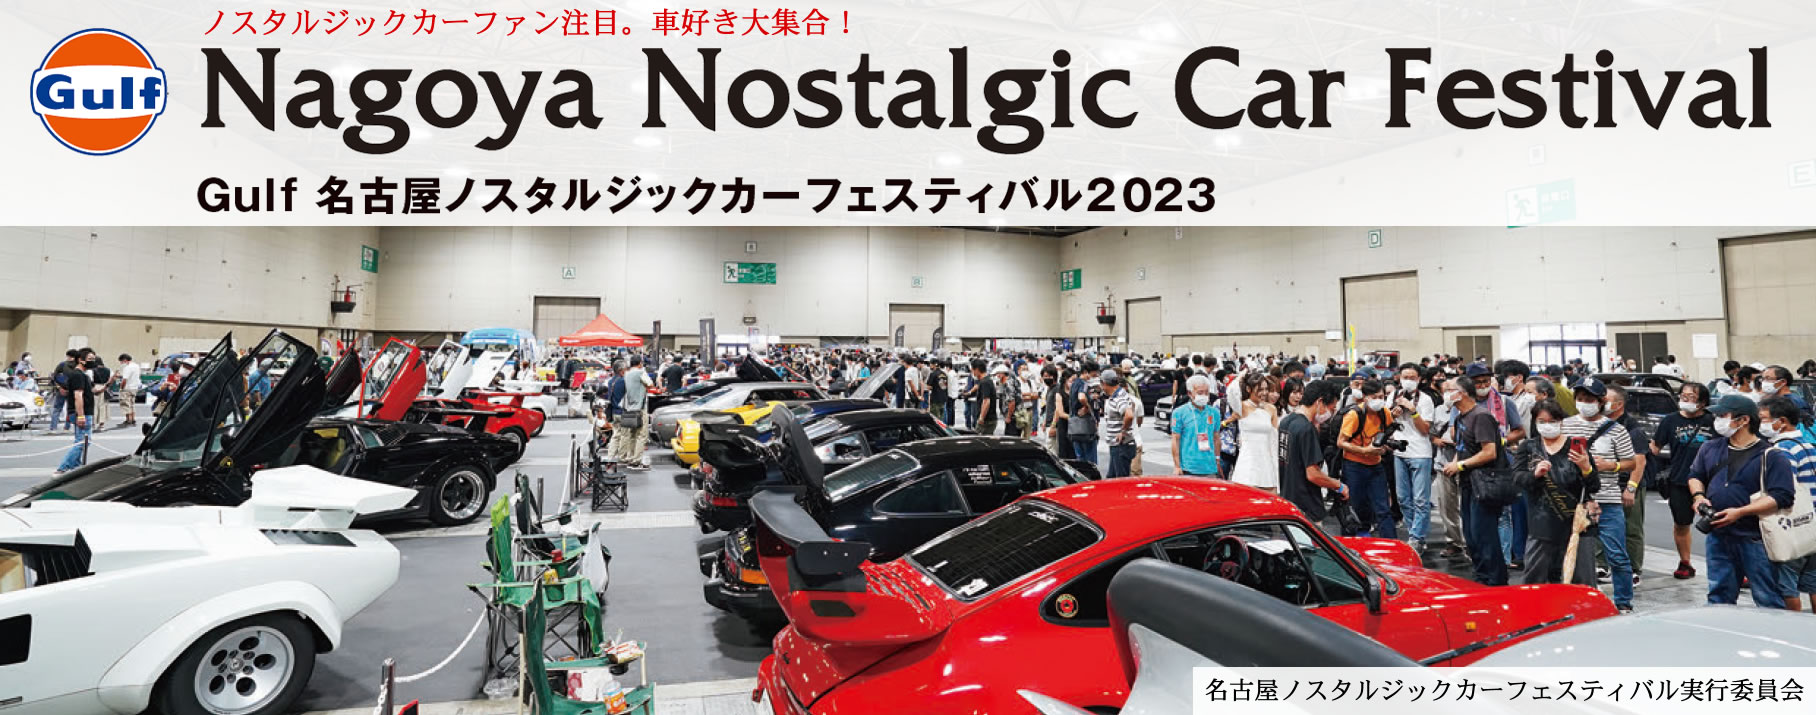 Gulf Nagoya Nostalgic Car Festival